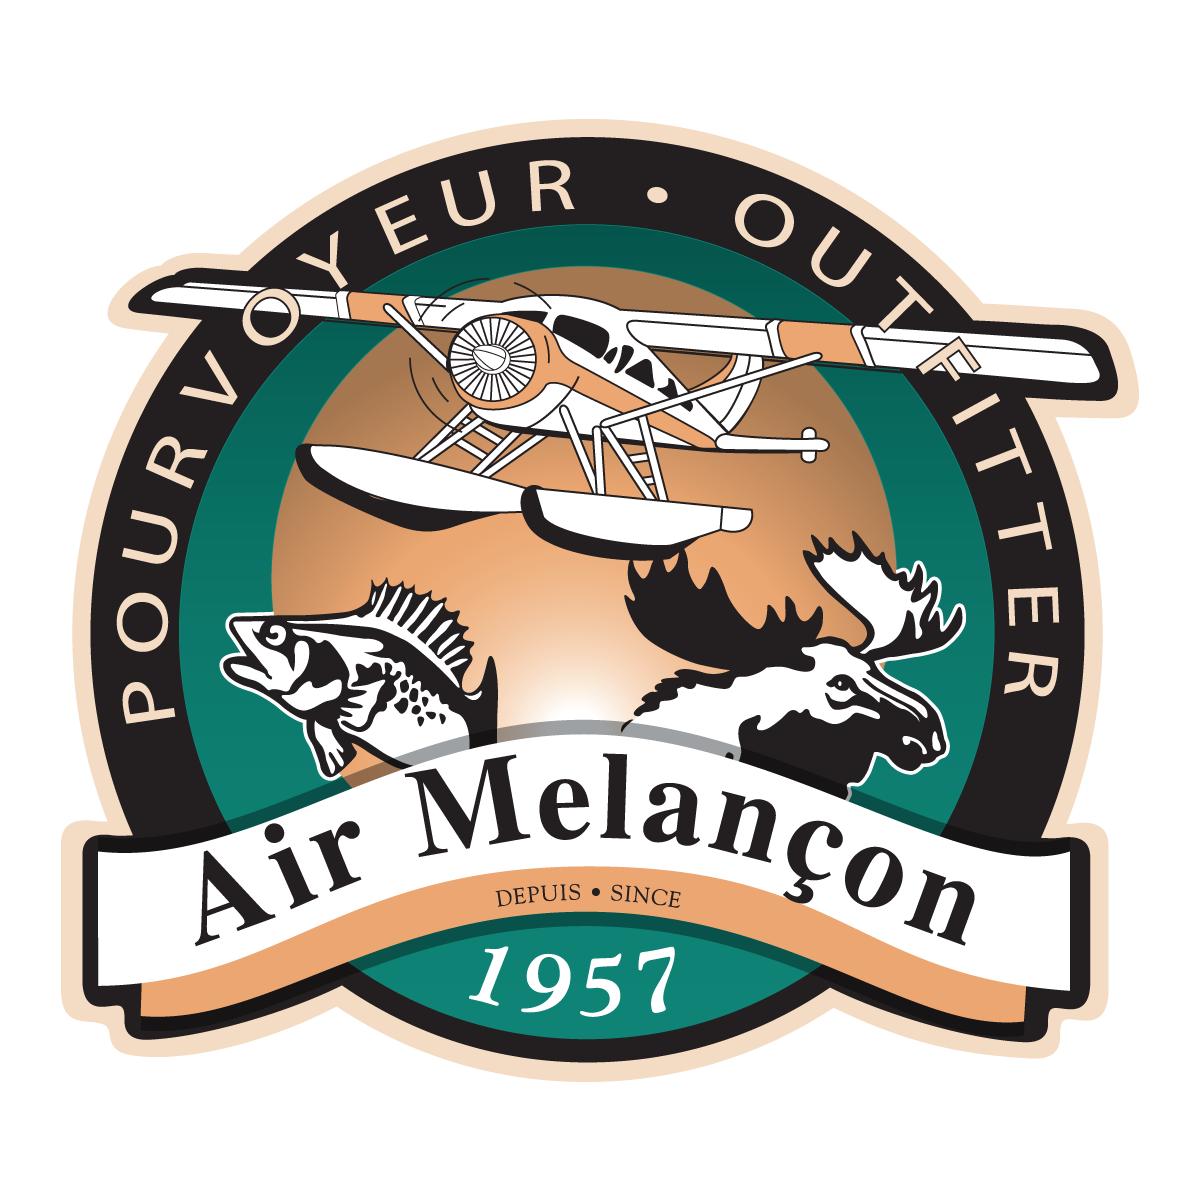 Air Tamarac is buying Air Melançon!